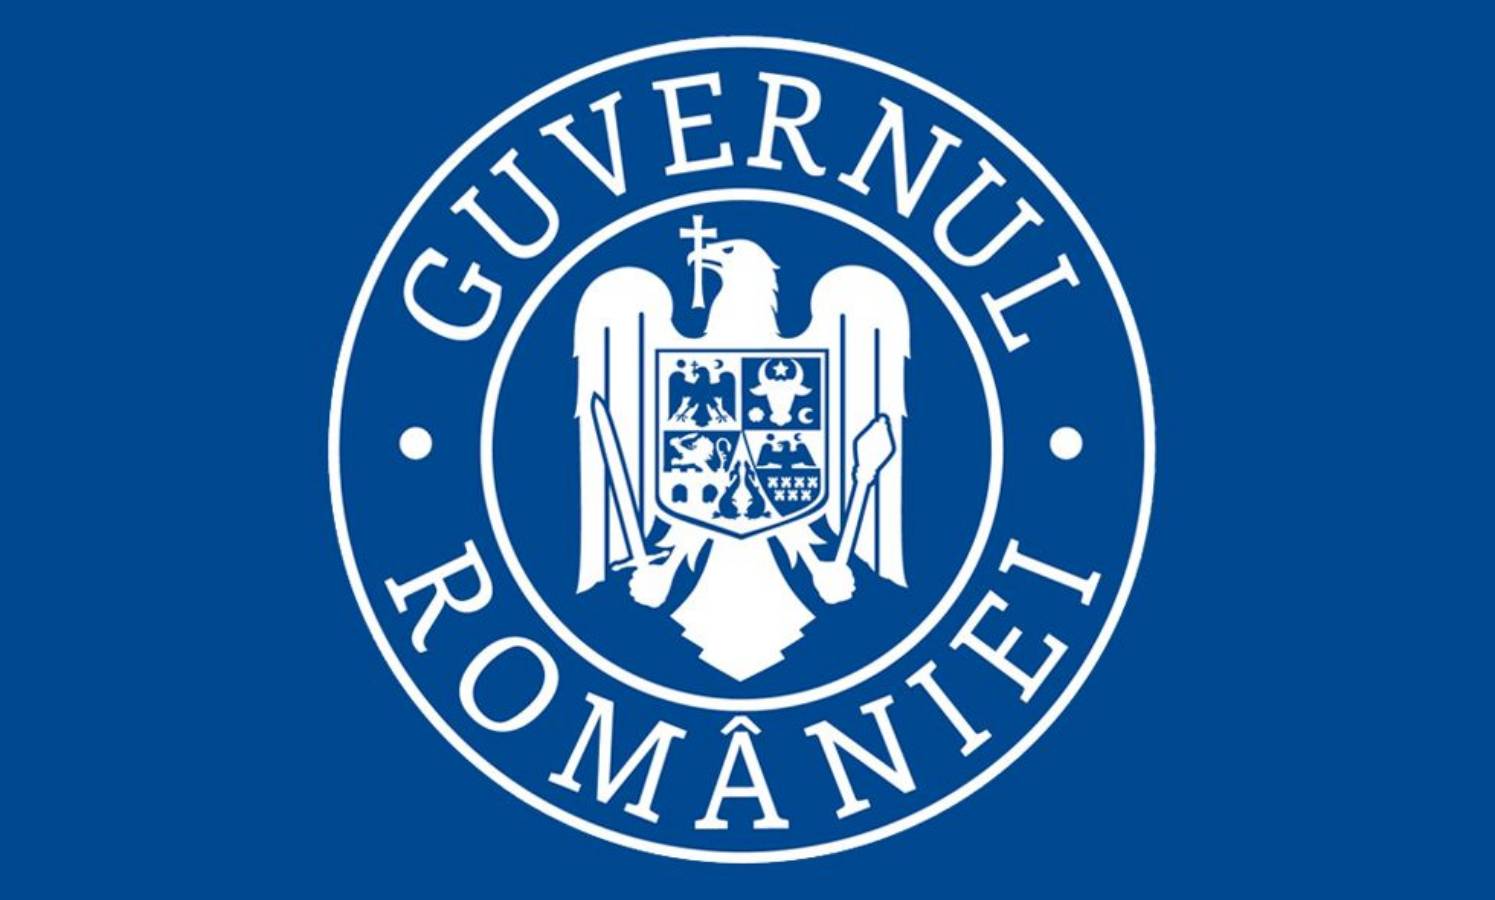 De regering van Roemenië beantwoordt vragen over reizen met Pasen